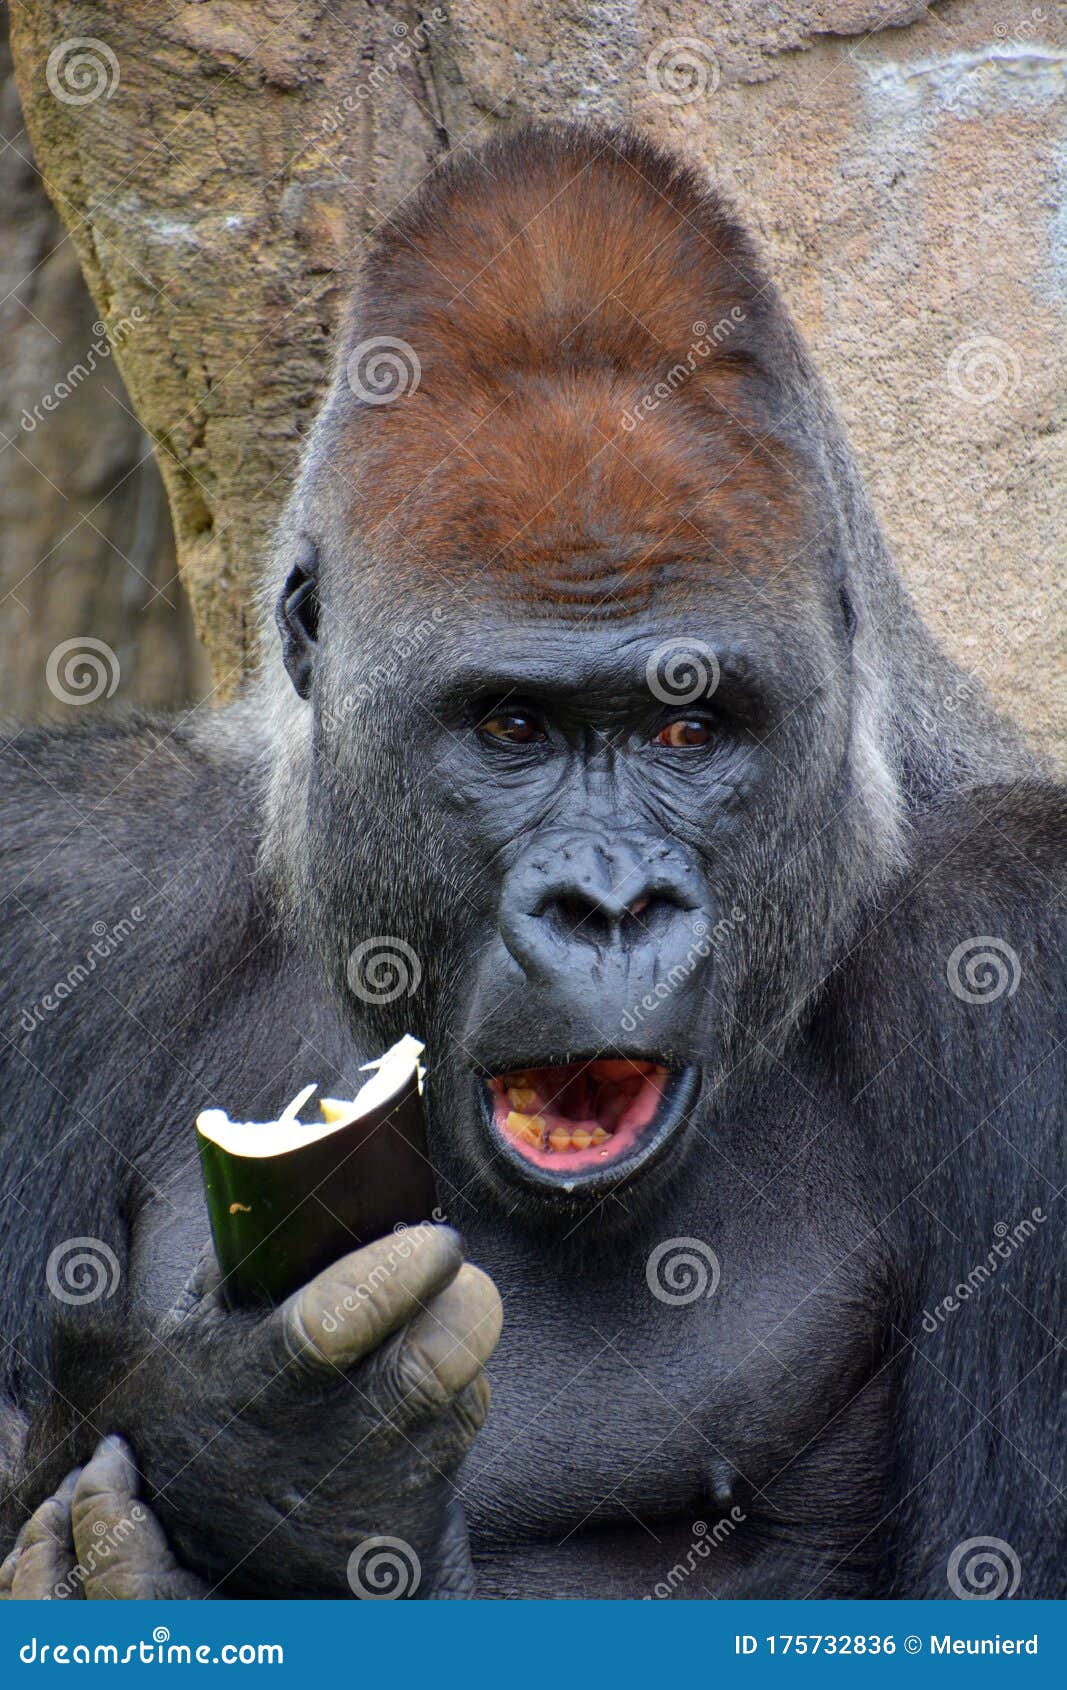 gorillas are ground-dwelling, predominantly herbivorous apes